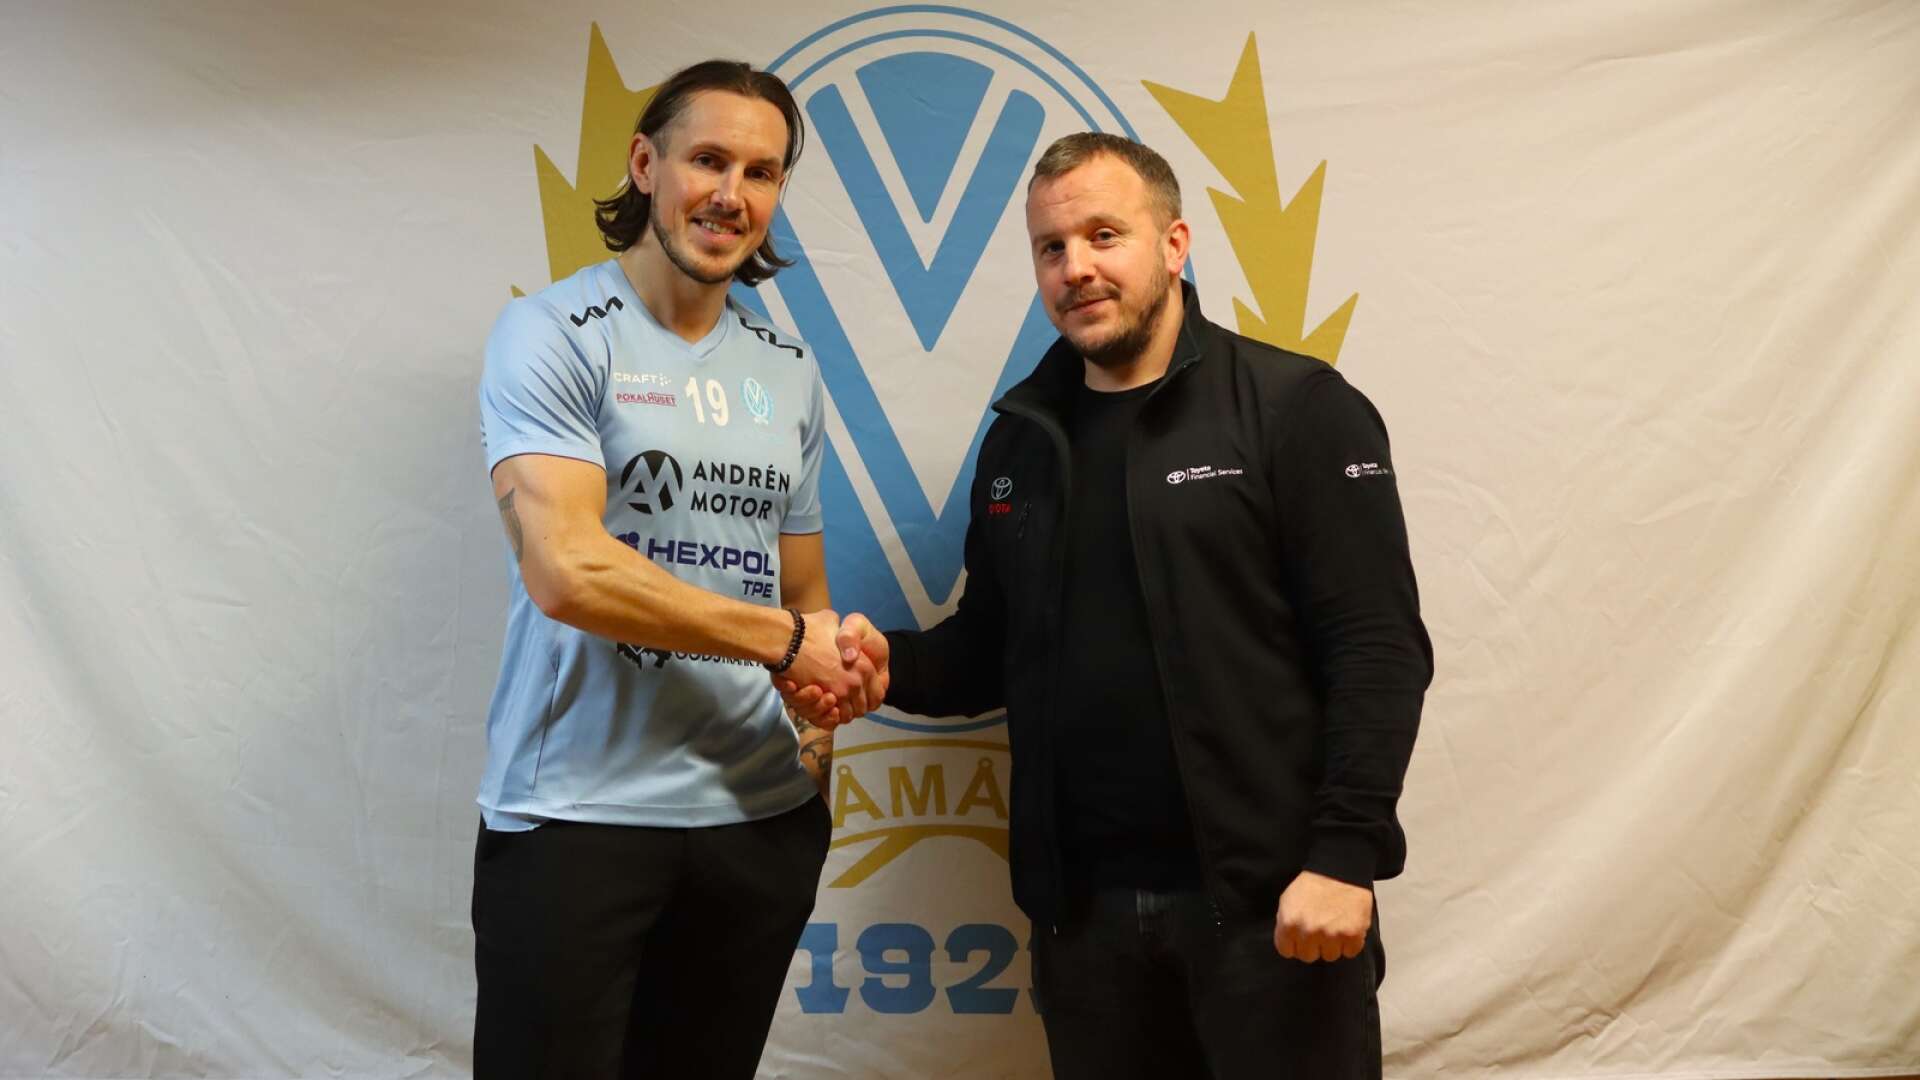 Vikens tränare Thomas Sääv har lyckats knyta till sig barndomsvännen David Johanesson till IF Viken. 